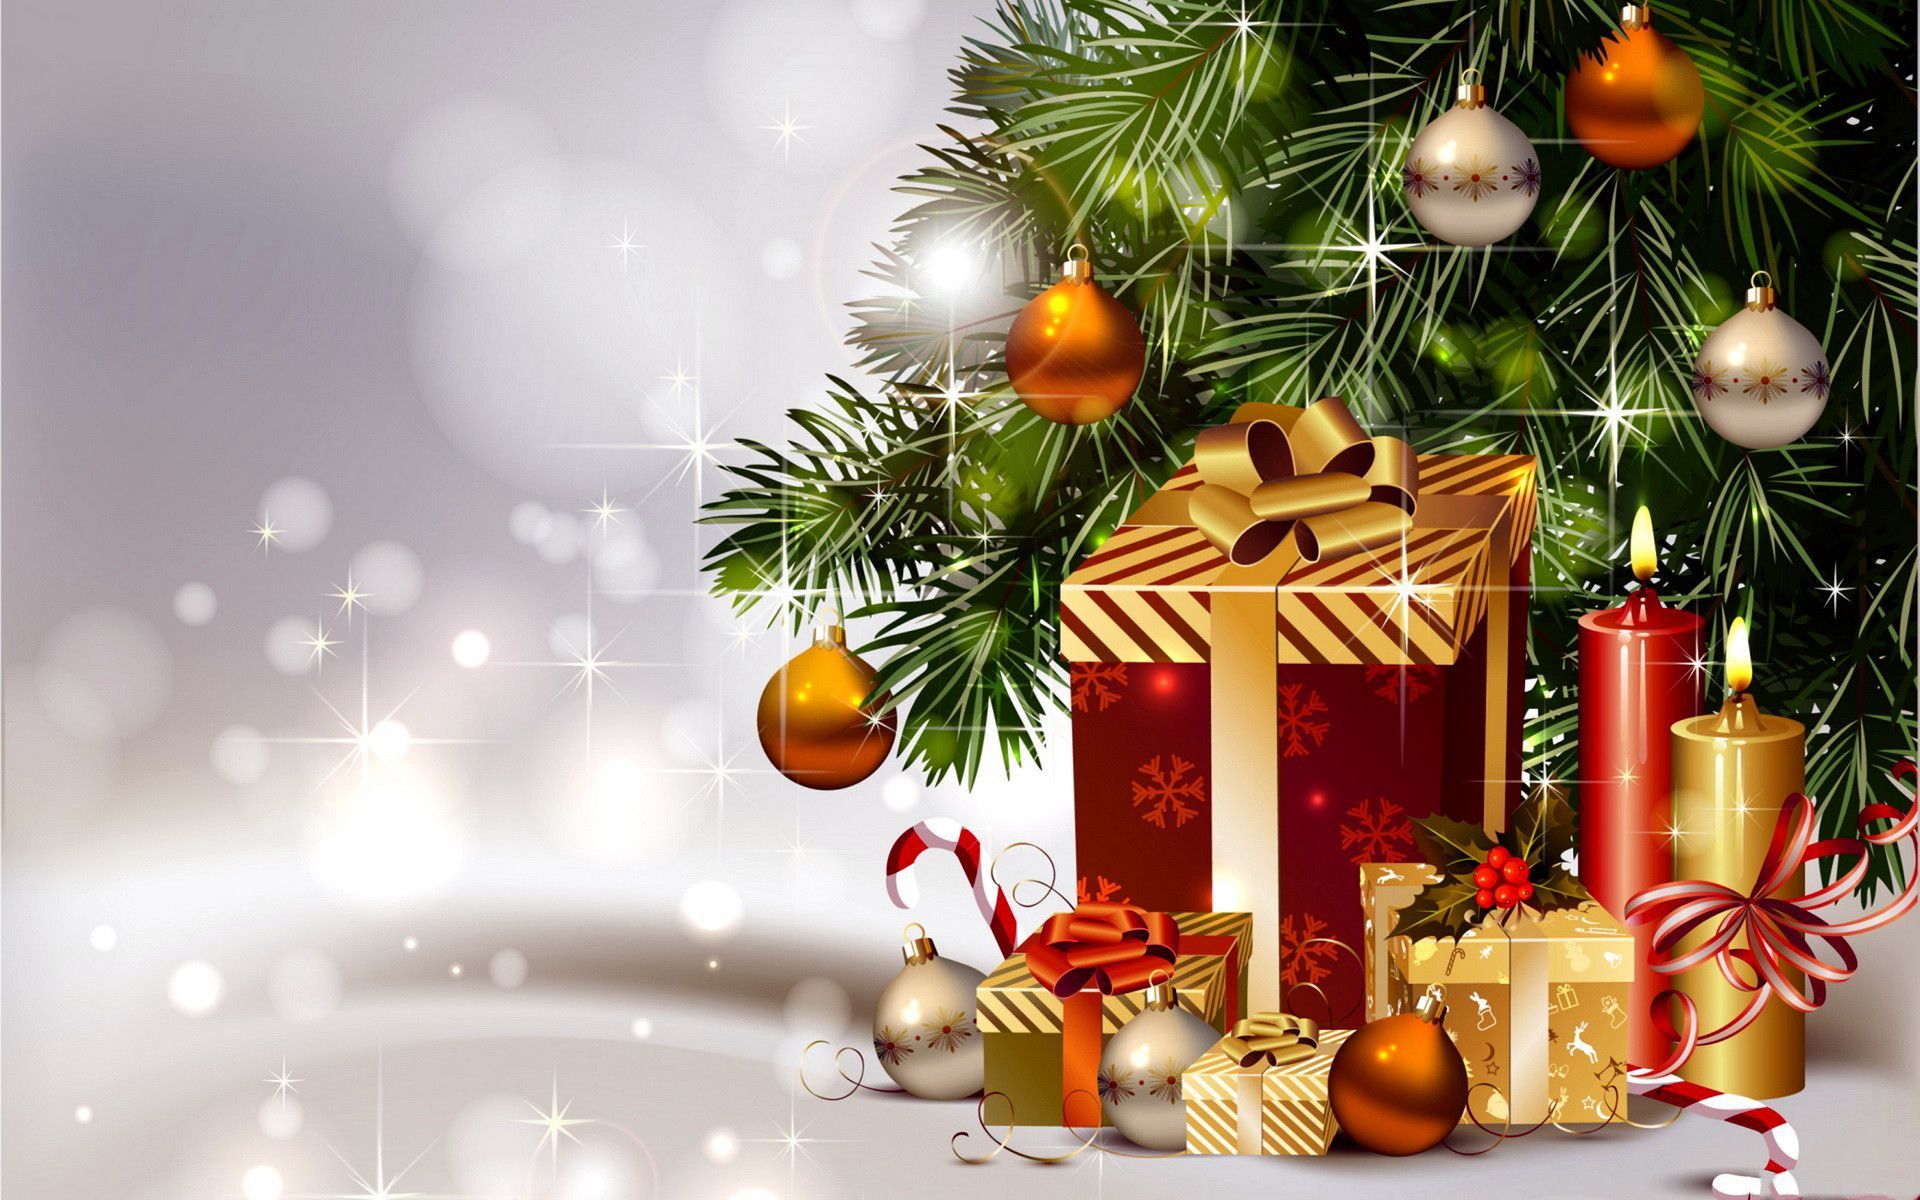 Descargar las imágenes de Navidad gratis para teléfonos Android y iPhone  fondos de pantalla de Navidad para teléfonos móviles